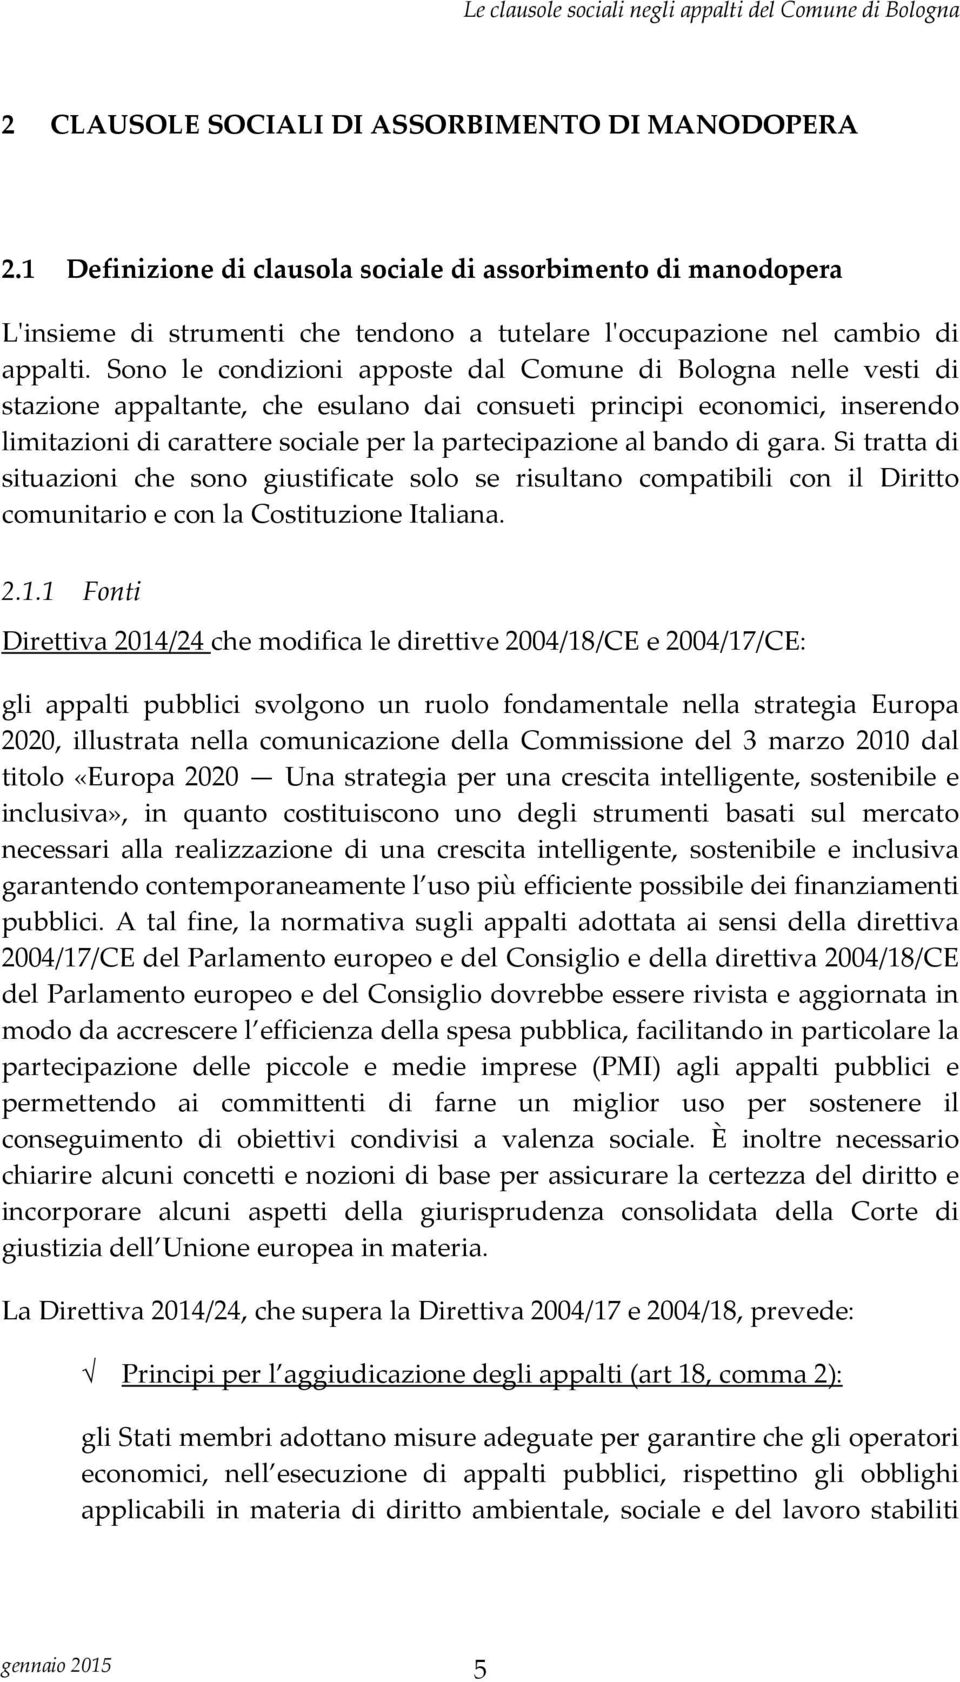 bando di gara. Si tratta di situazioni che sono giustificate solo se risultano compatibili con il Diritto comunitario e con la Costituzione Italiana. 2.1.